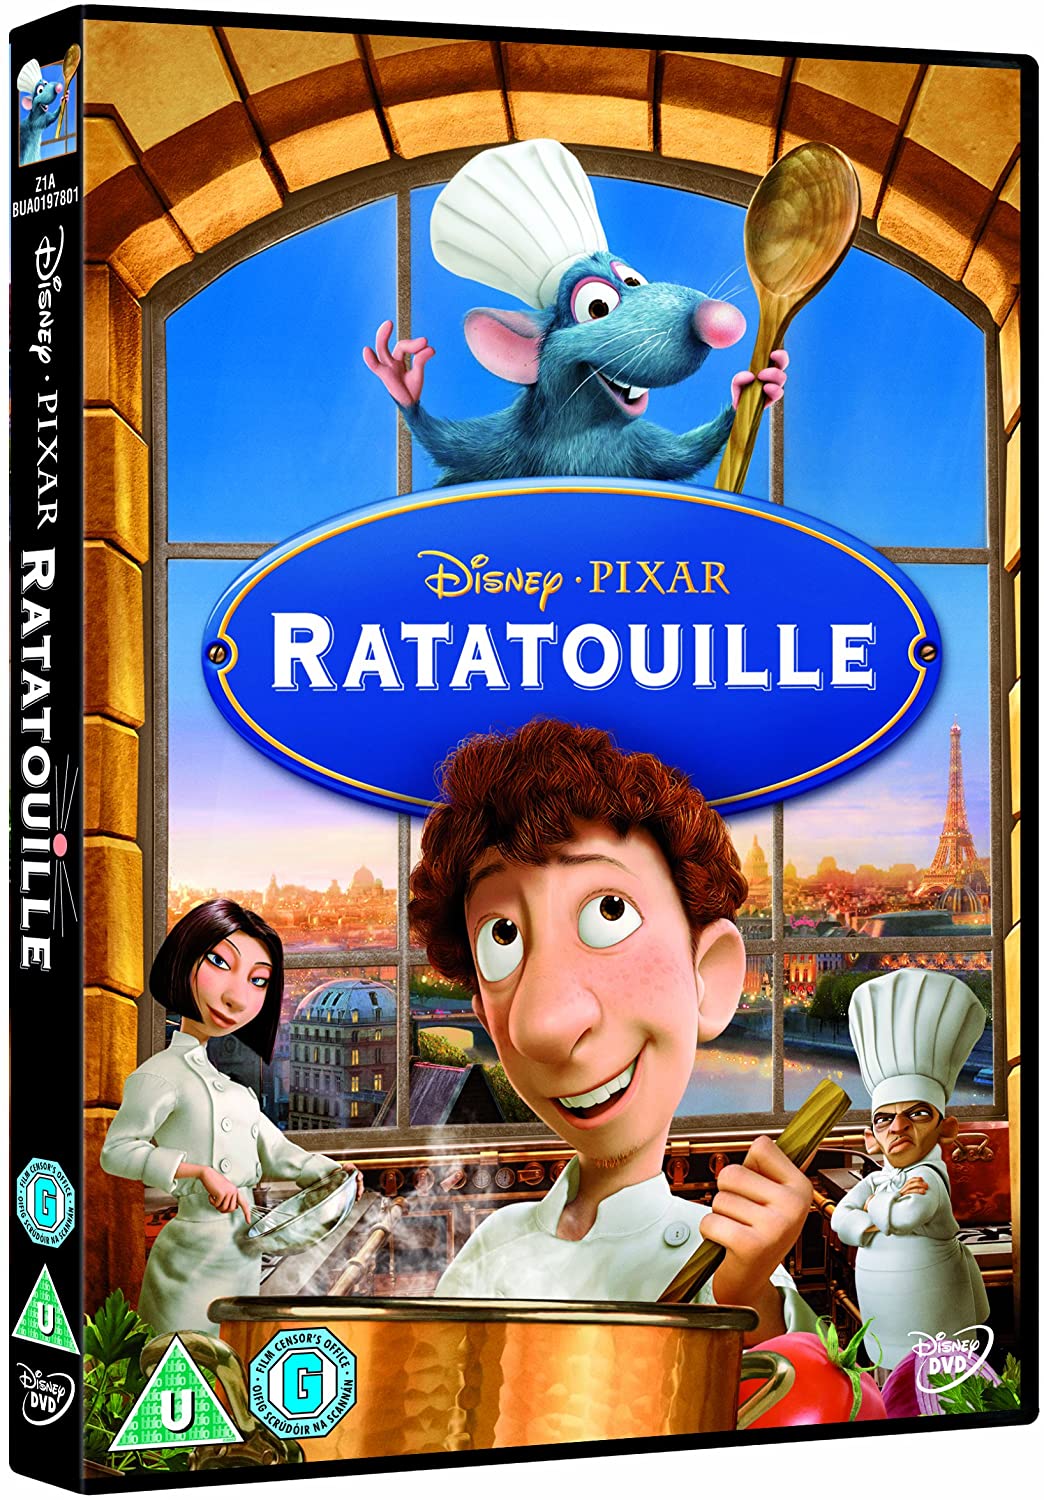 Ratatouille - Family/Comedy [DVD]